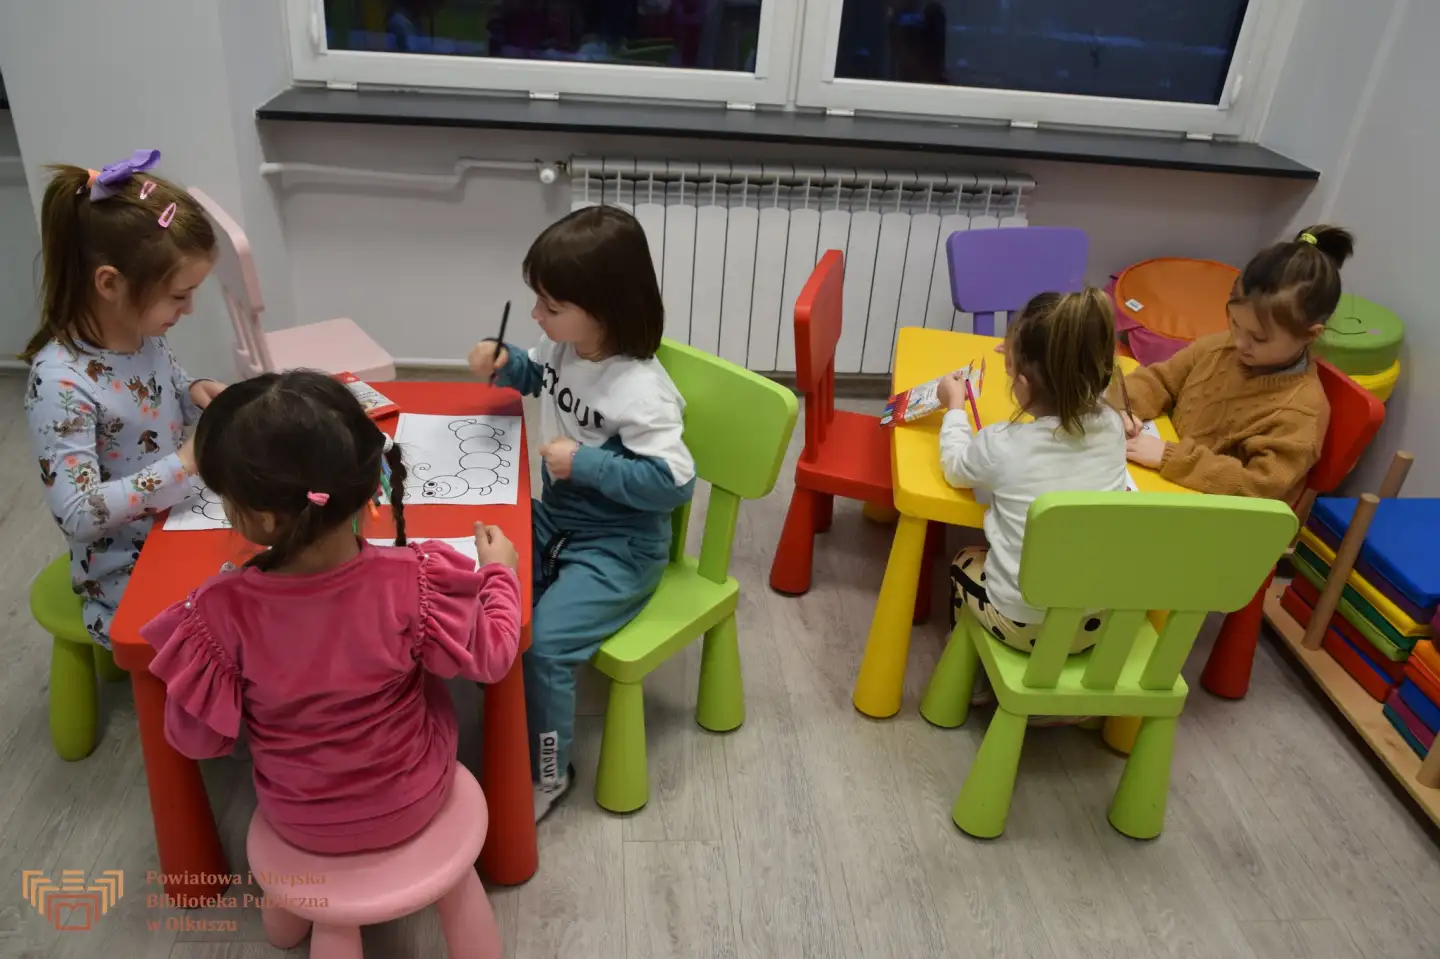 Zdjęcie zostało zrobione w sali edukacyjnej olkuskiej Biblioteki. Przedstawia dzieci siedzące przy kolorowych stolikach i malujących kolorowymi kredkami gąsienice.